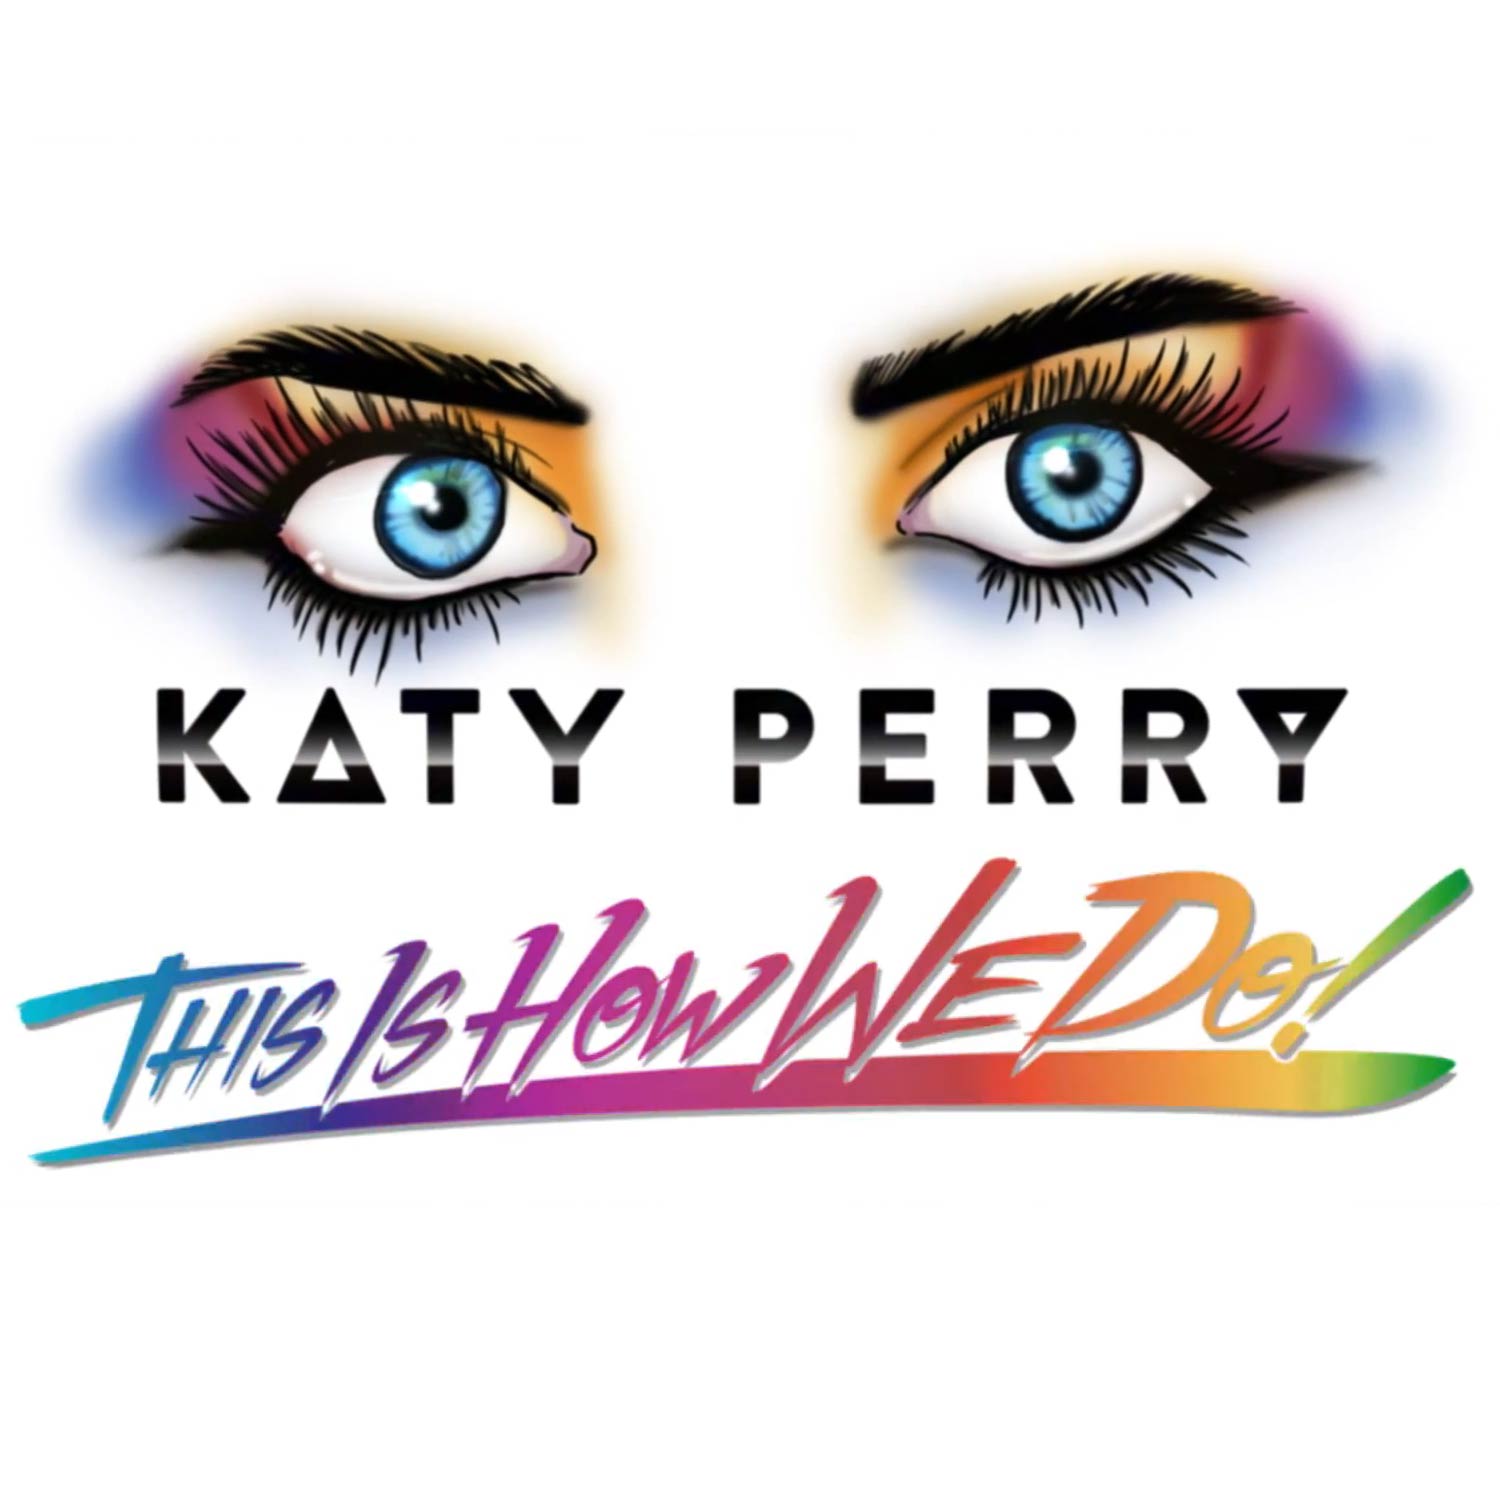 Katy Perry: This is how we do, la portada de la canción